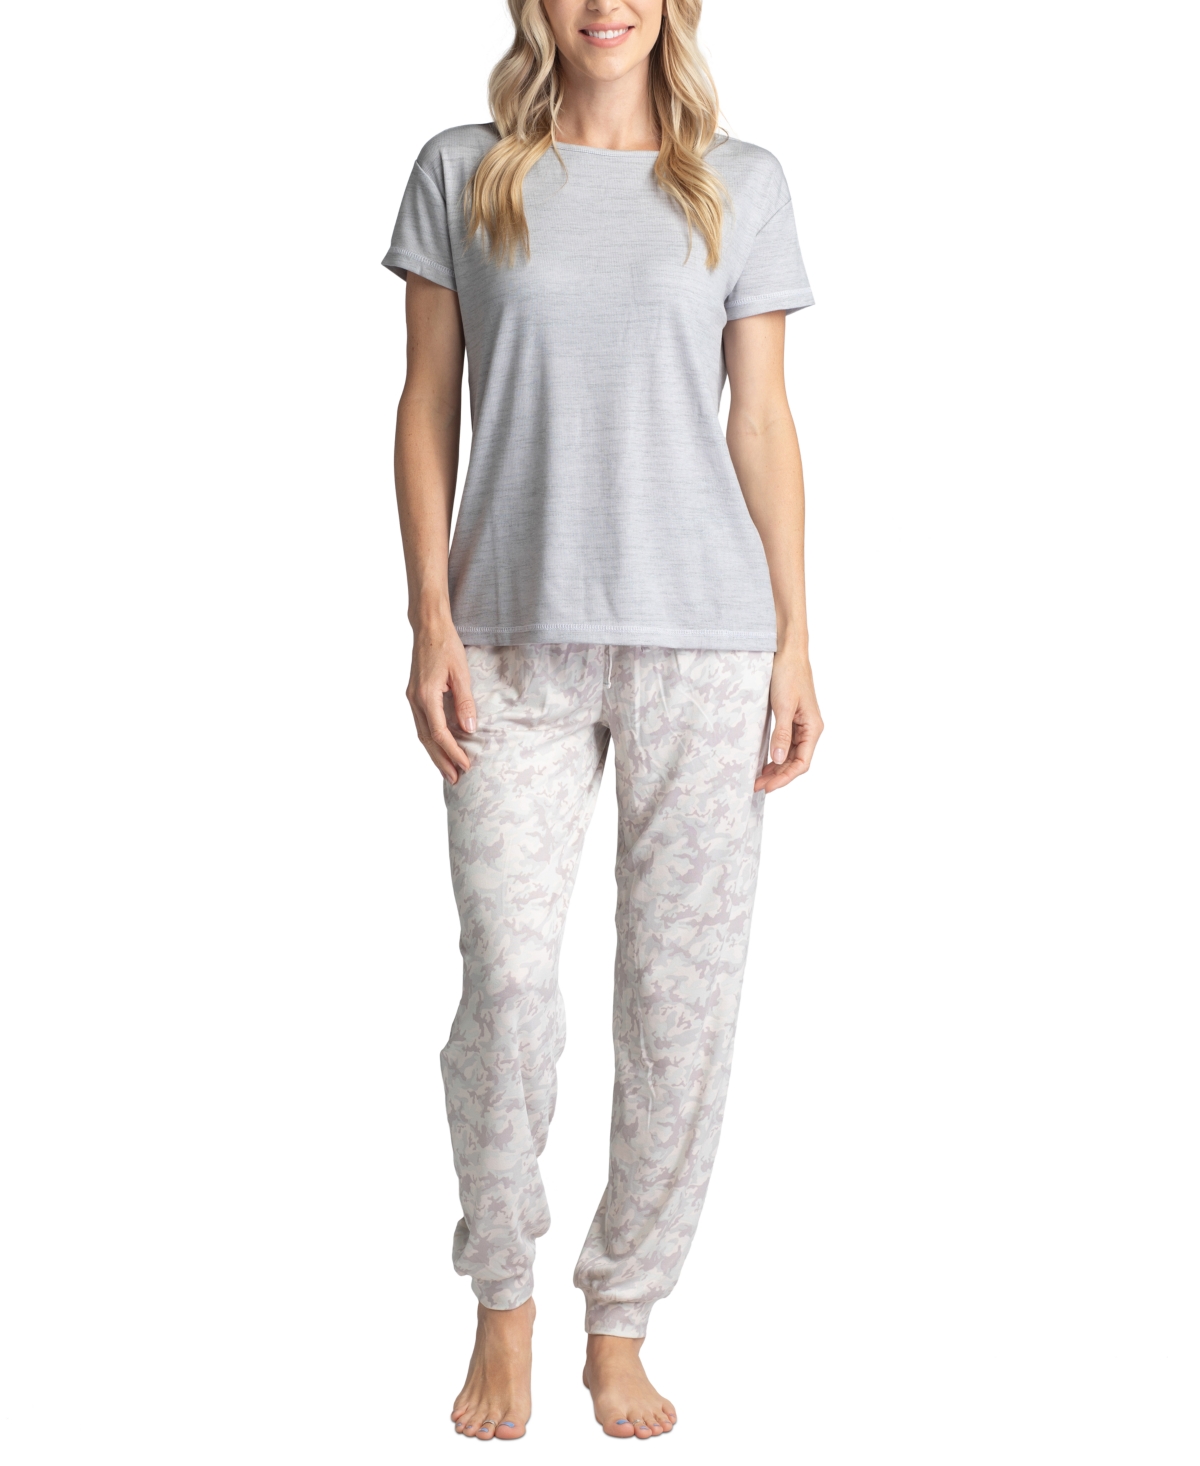 Plus Size Crewneck Top & Printed Jogger Pajama Pants Set - Gray Camo